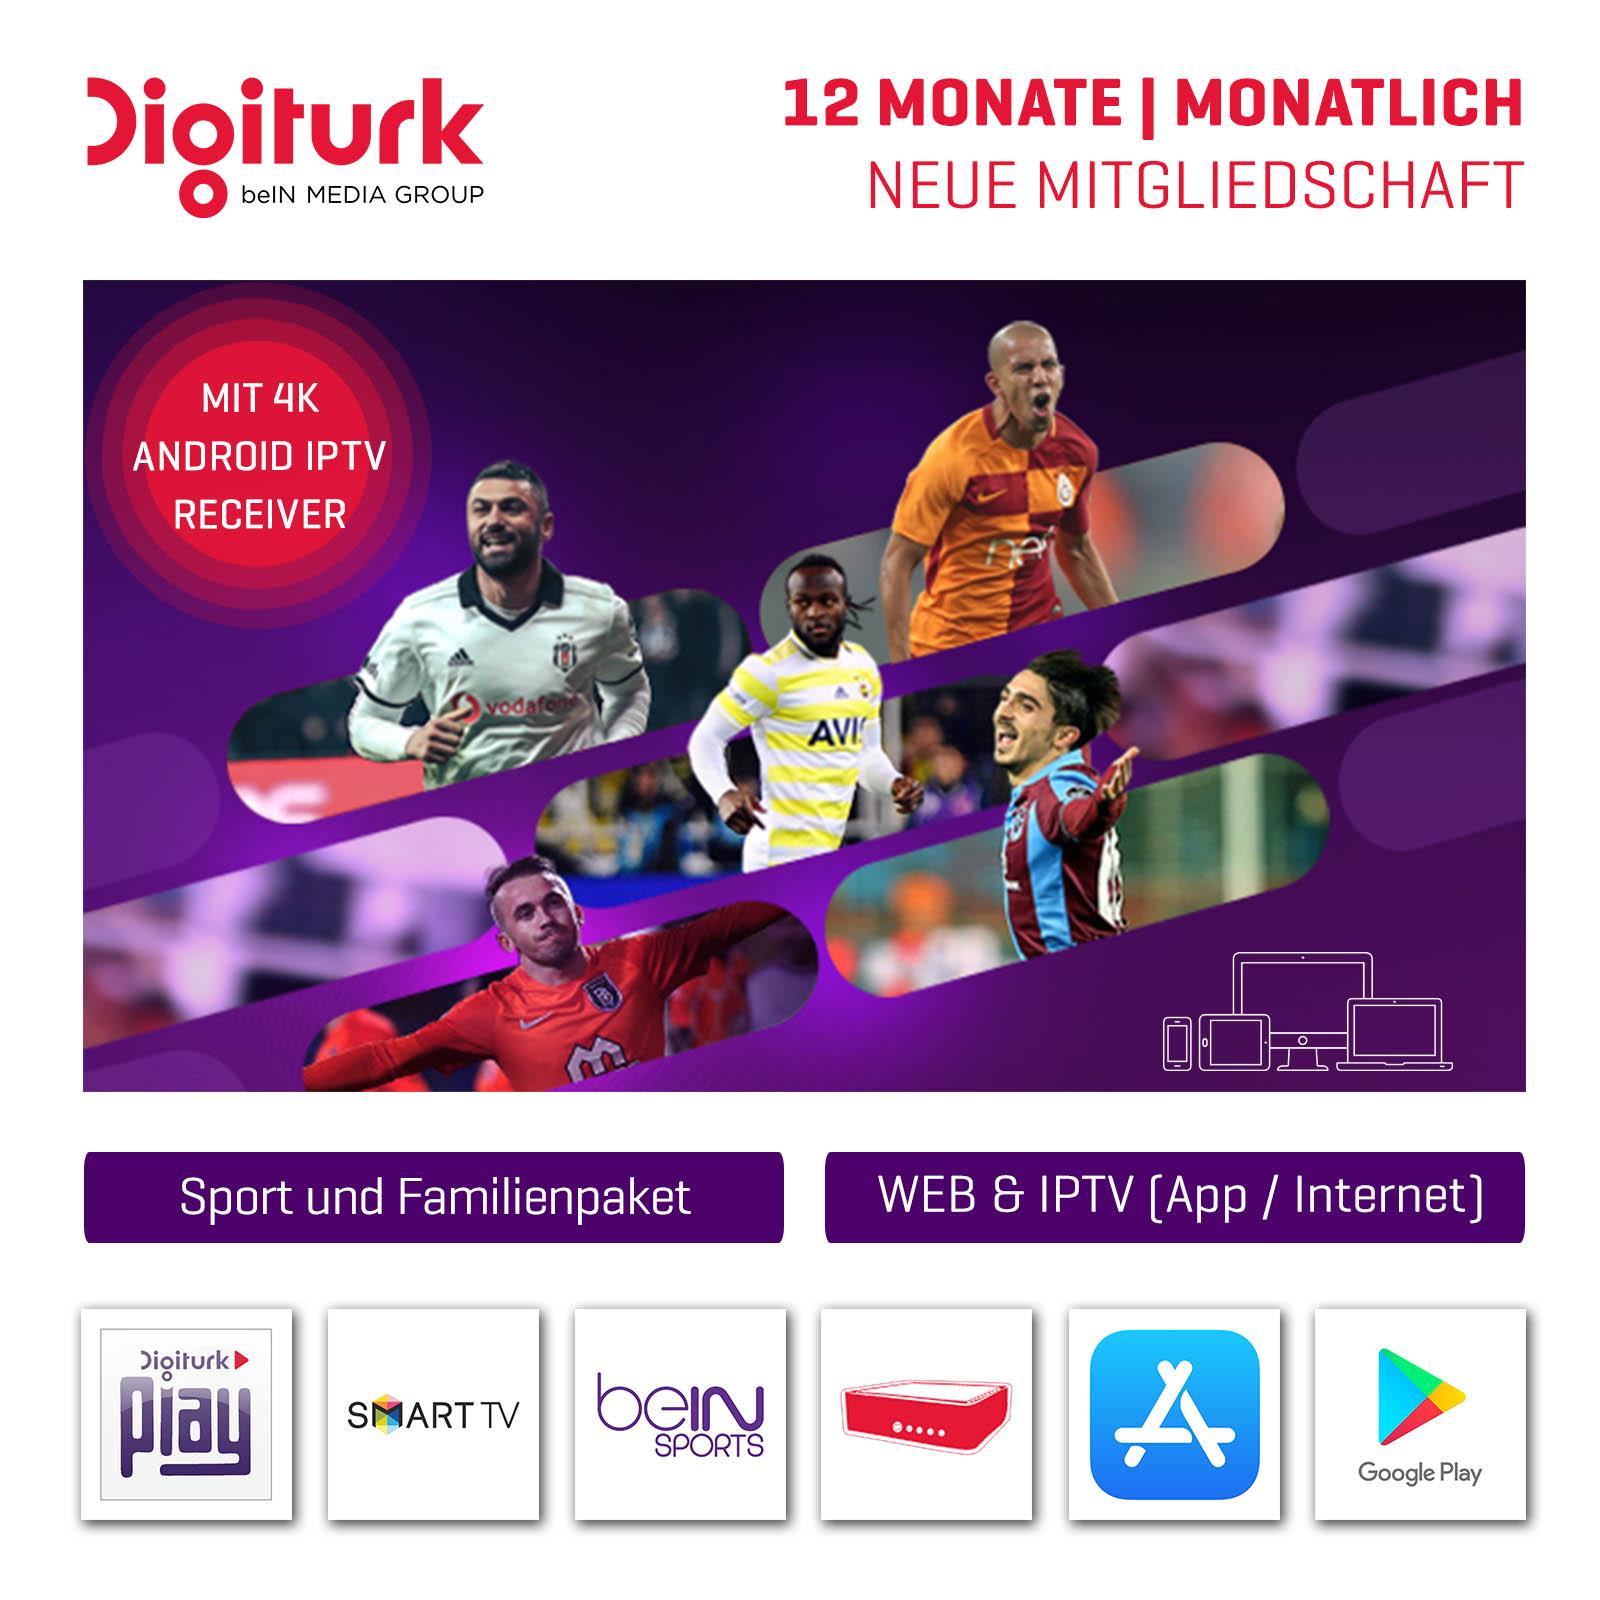 Digiturk Play WEB IPTV beIN Sports and Familienpaket Monatlich 19.90€ 12 Monate Abo mit IPTV Box